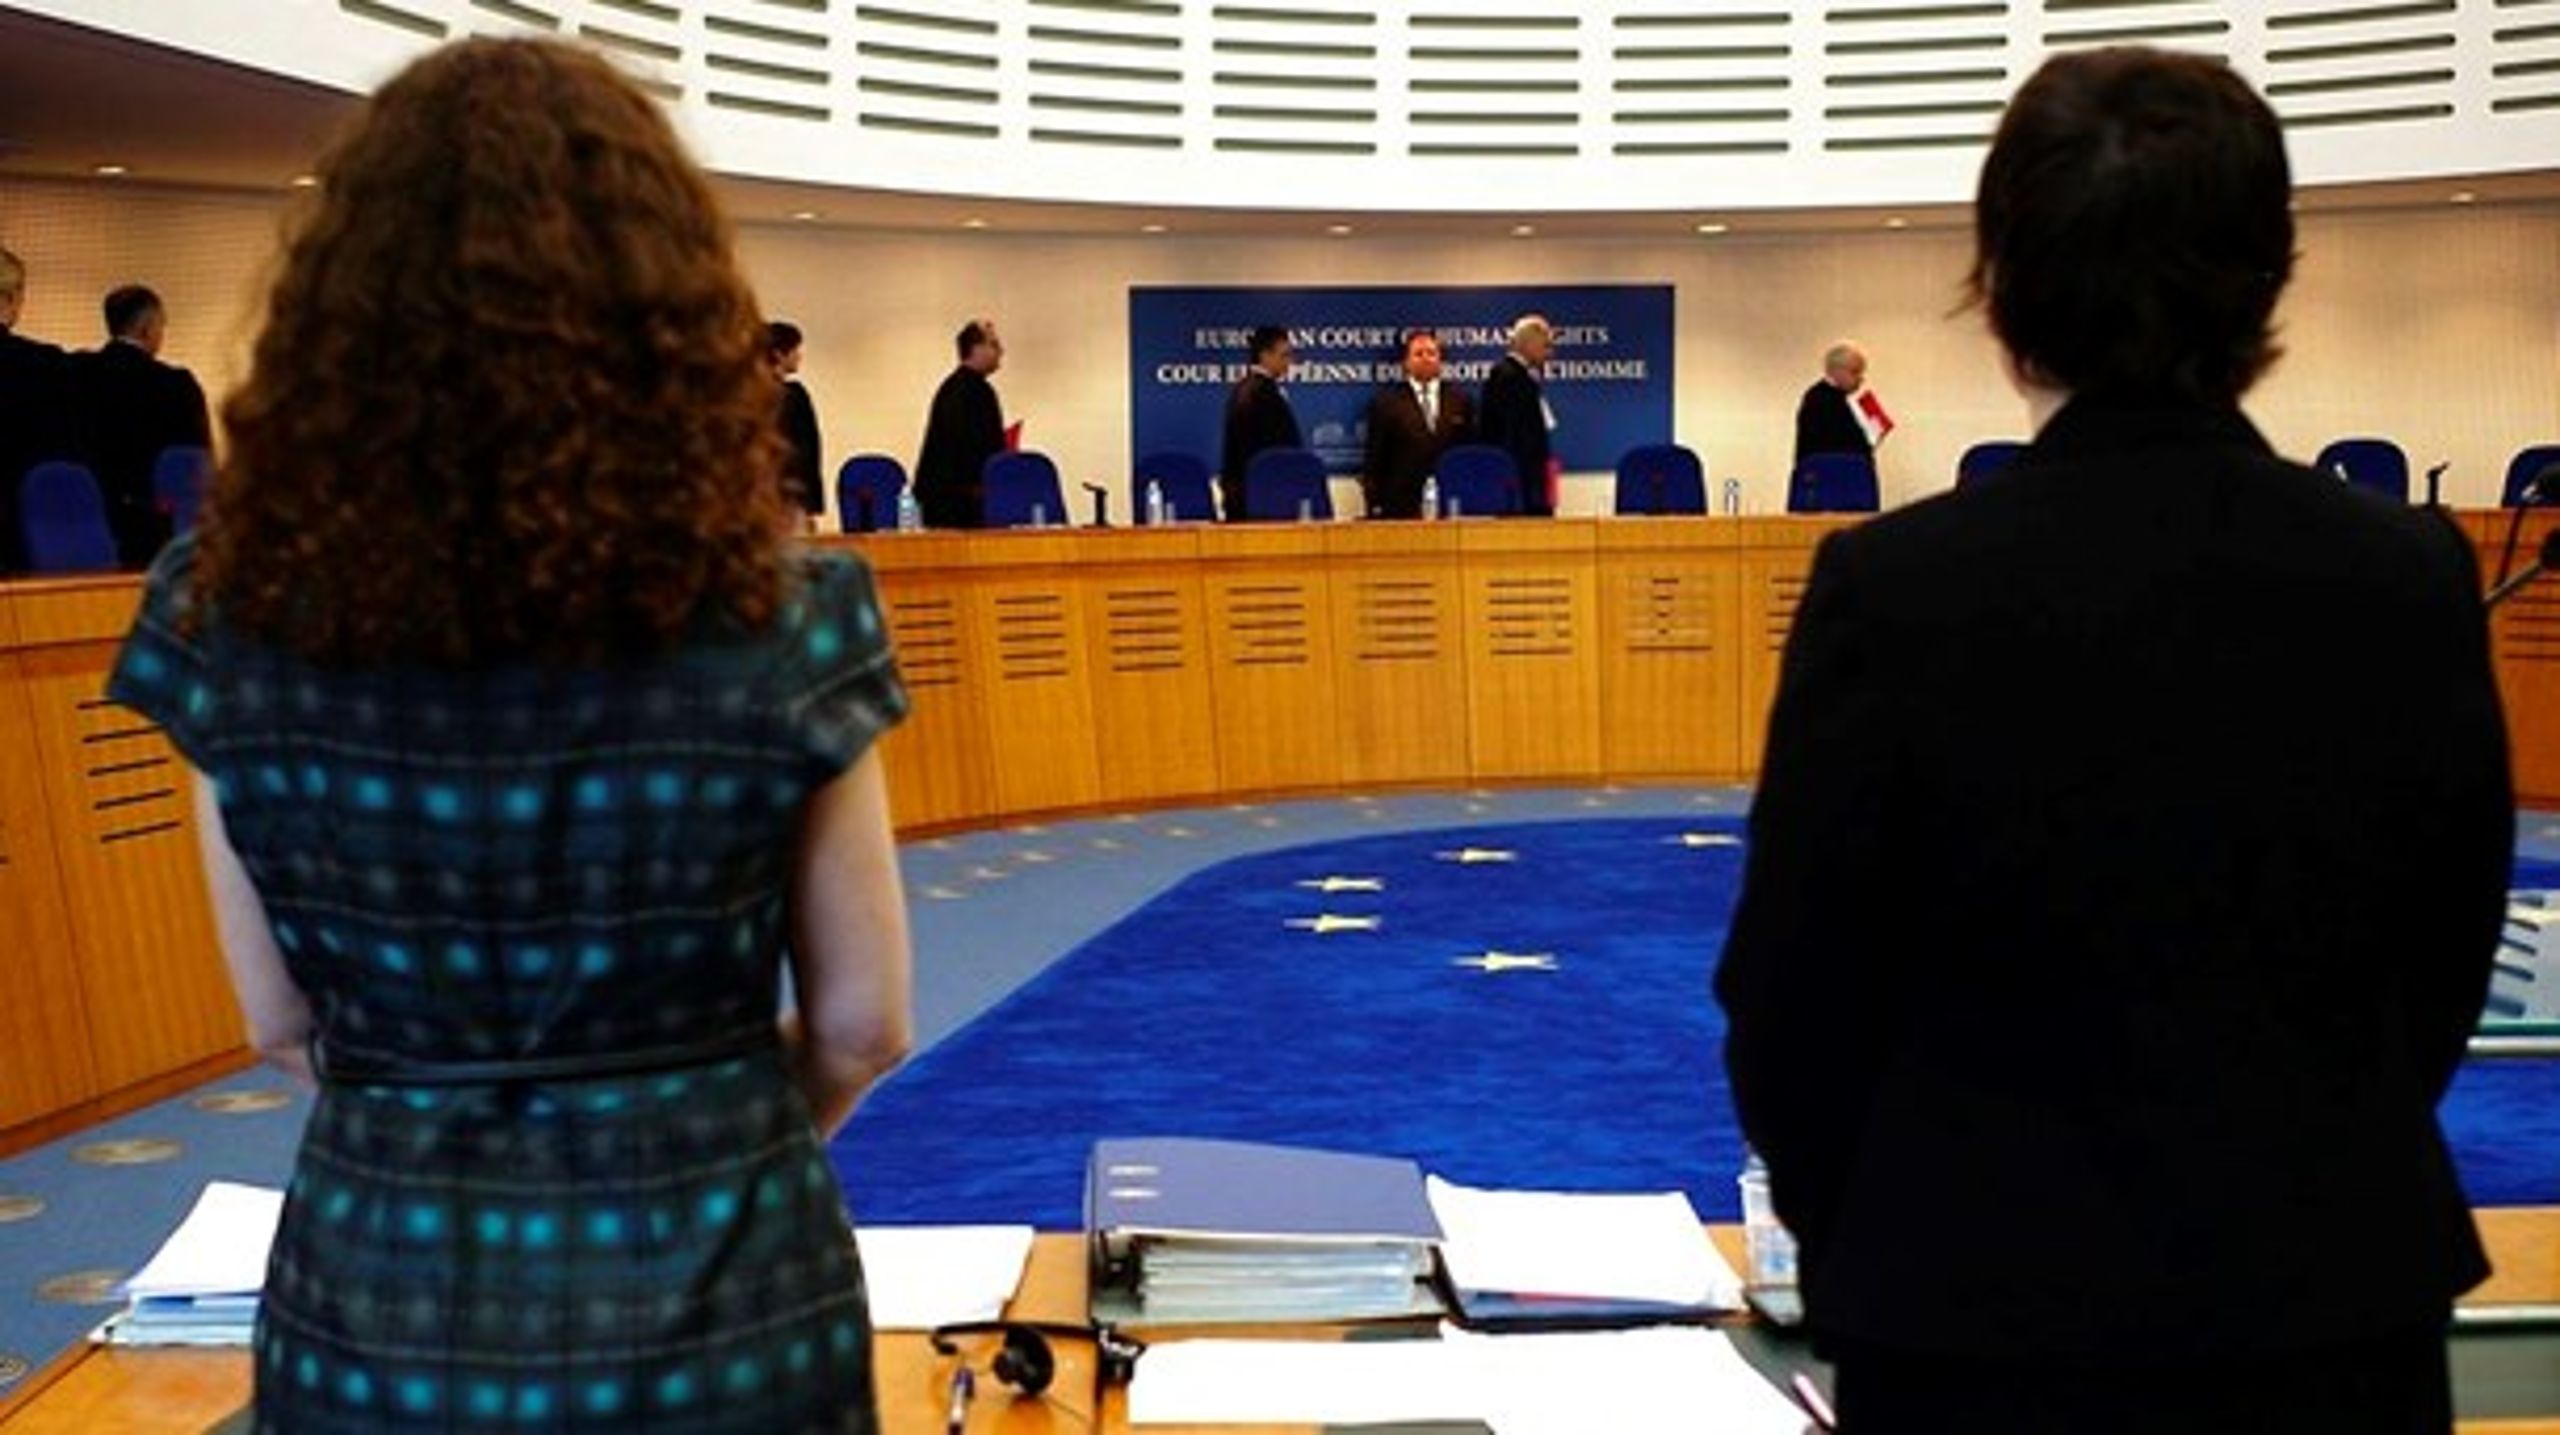 Den Europæiske Menneskerettighedsdomstol i Strasbourg bliver ofte kritiseret. Regeringen vil reformere systemet, men det advarer tidligere ambassadør imod.